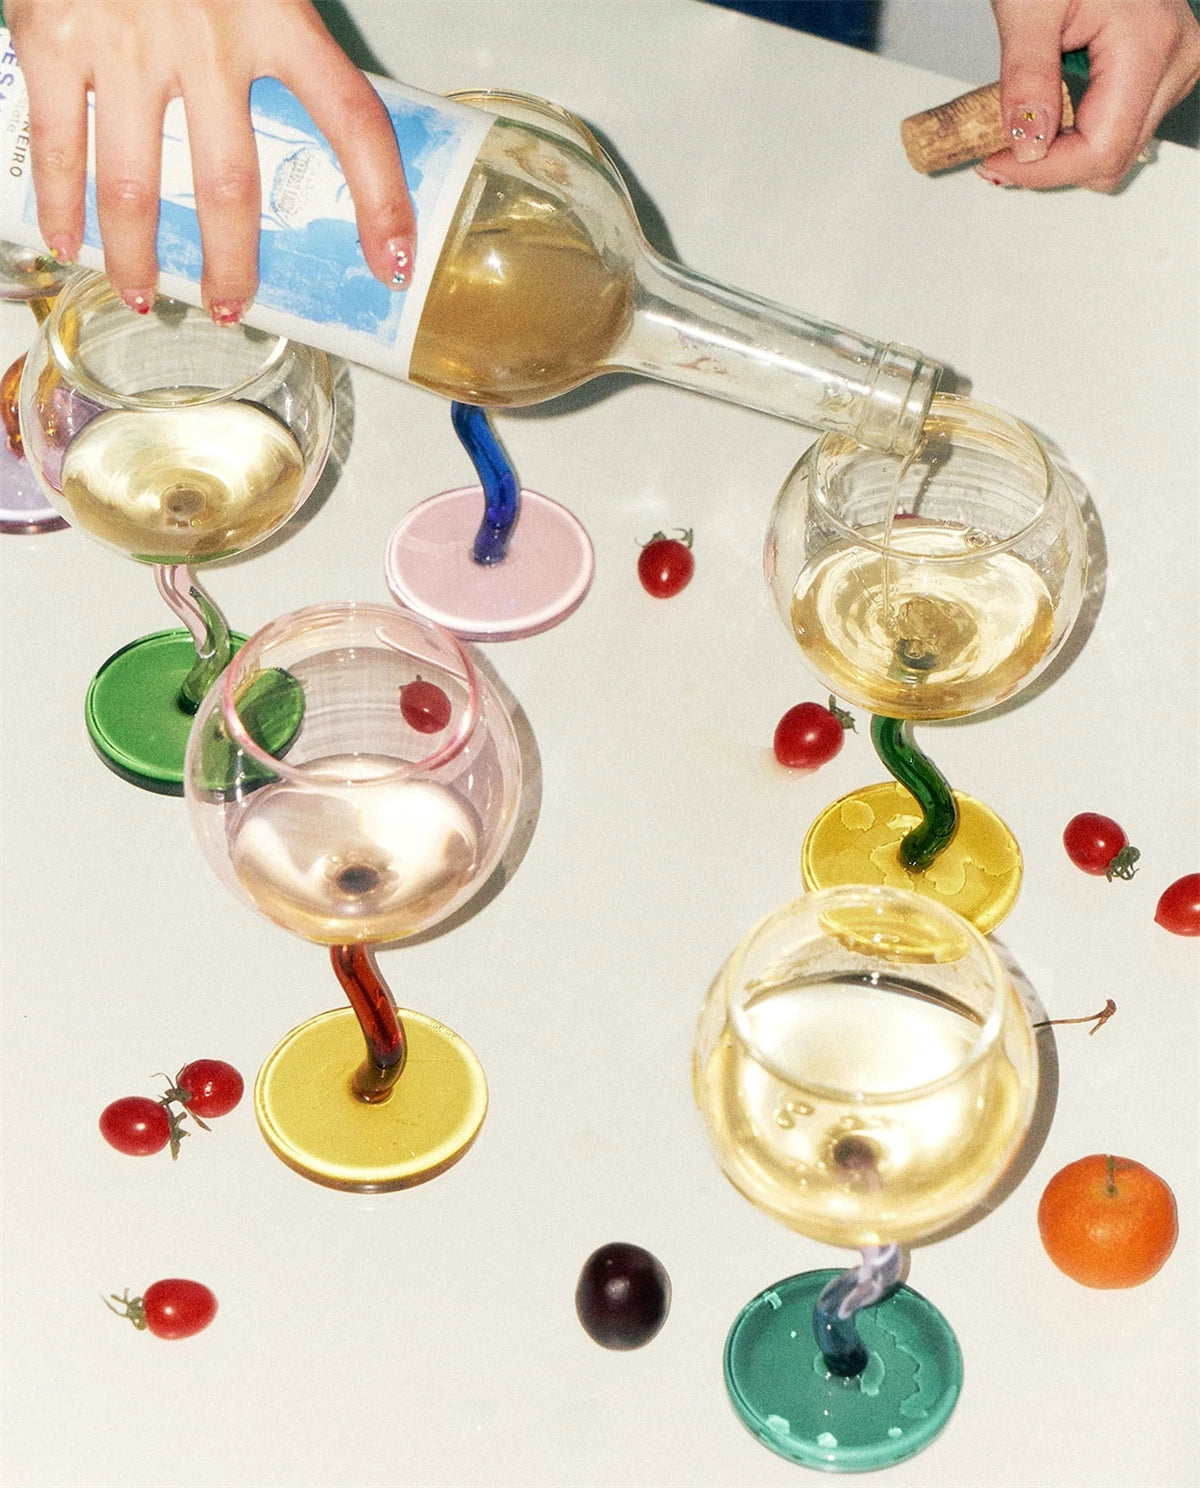 Wavy Wine Glass